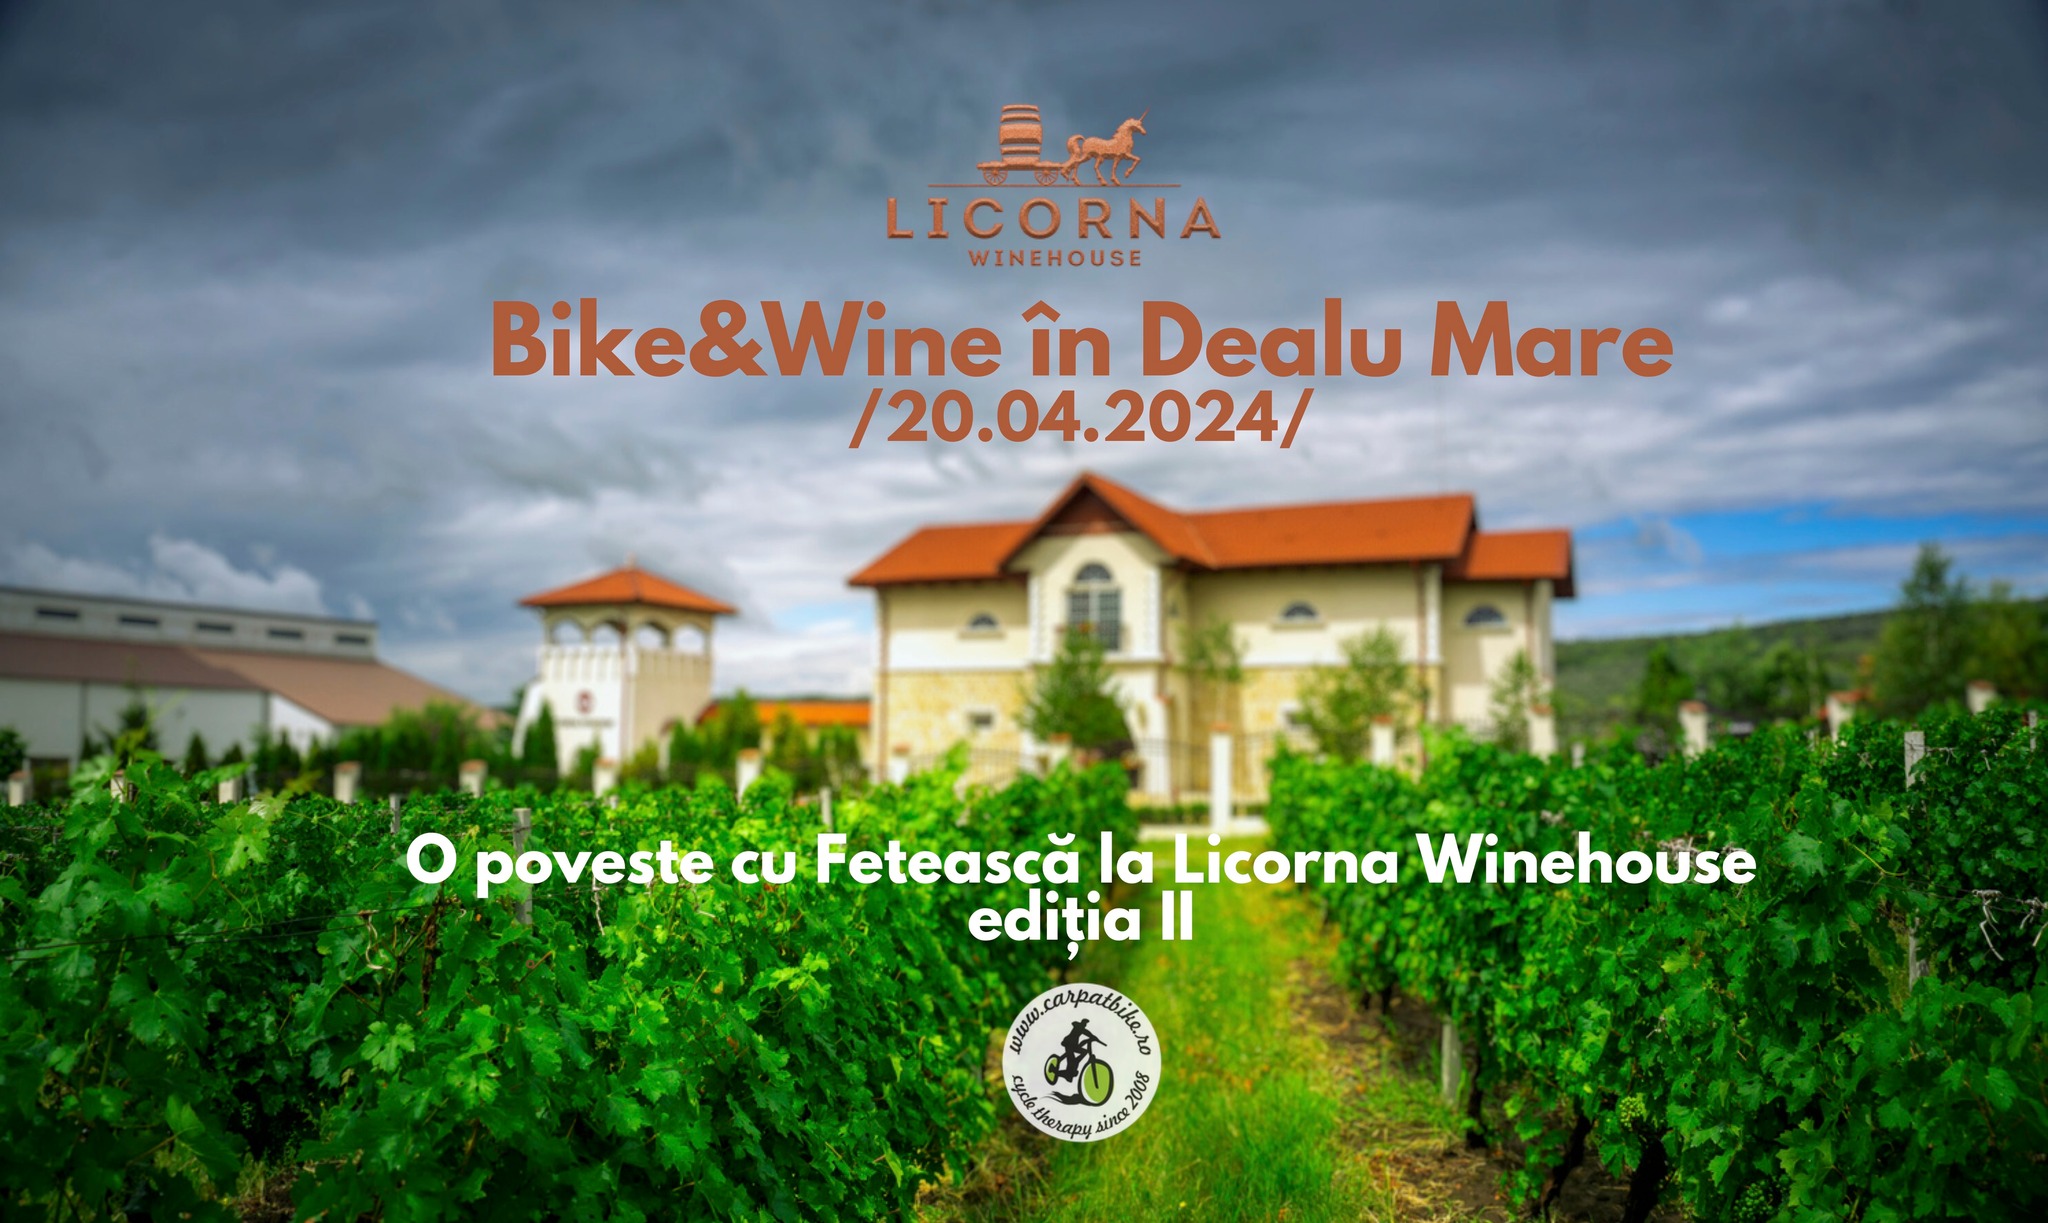 Bike & Wine - O poveste cu Fetească la Licorna Winehouse ed.II (Dealu Mare)